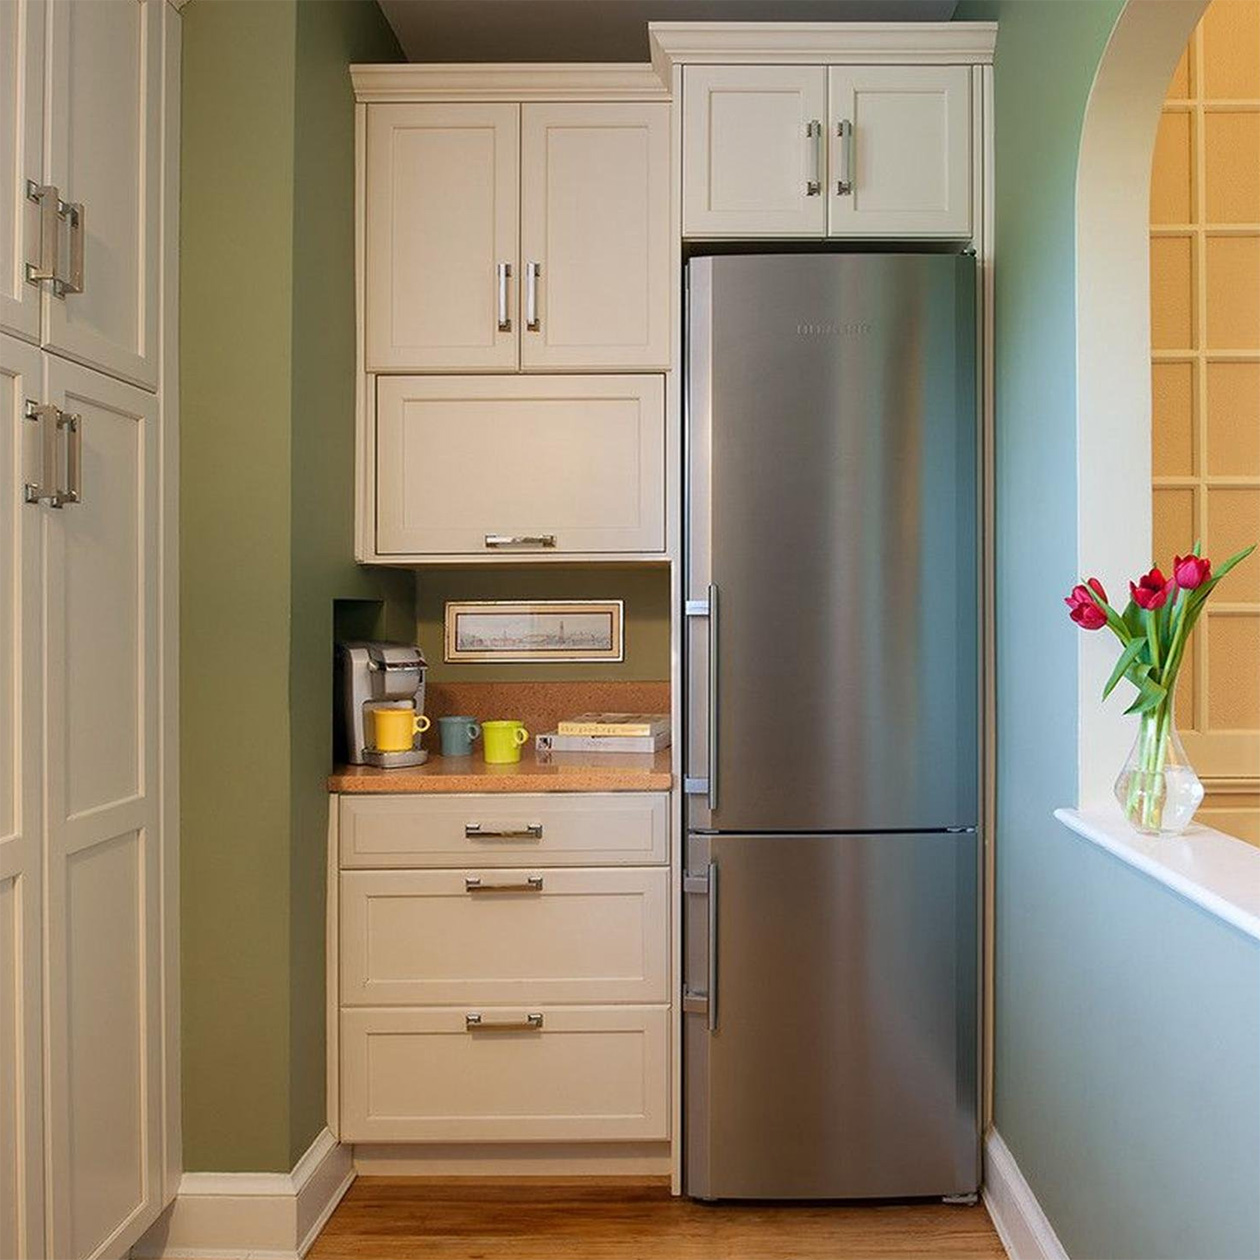 Узкий холодильник впишется даже в экстремально небольшую кухню. Источник: pro-dachnikov.com